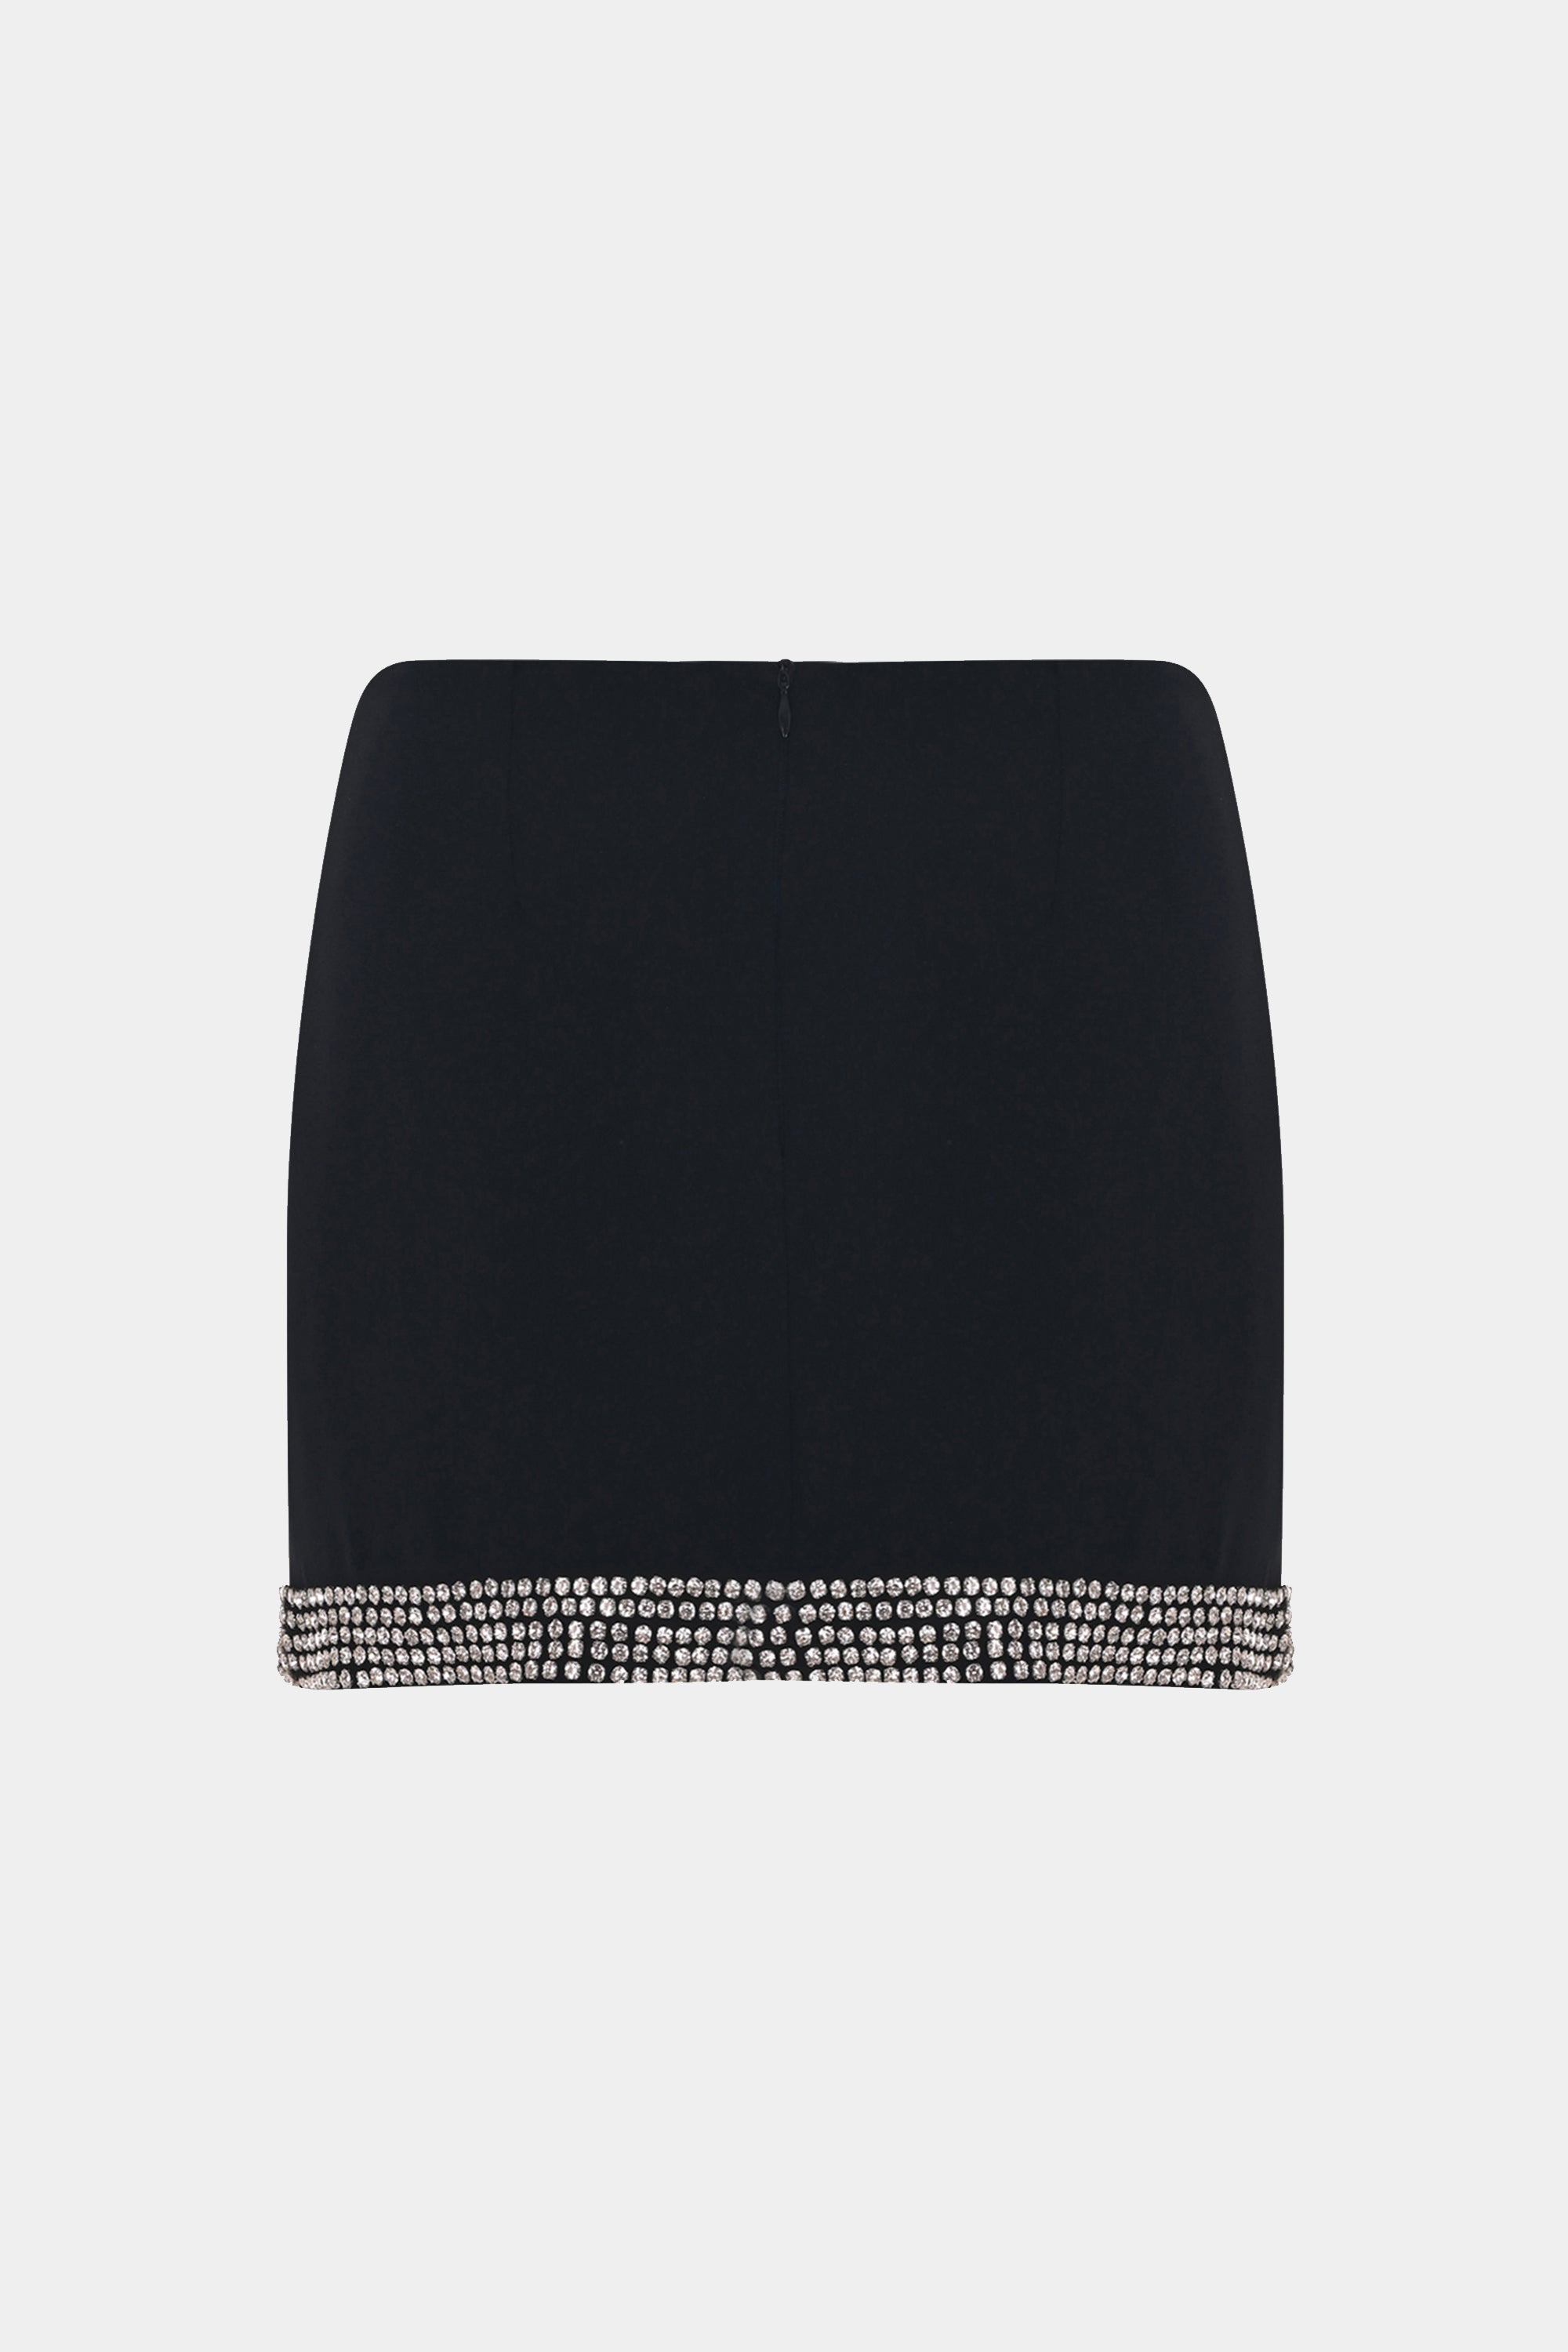 Sloane Skirt